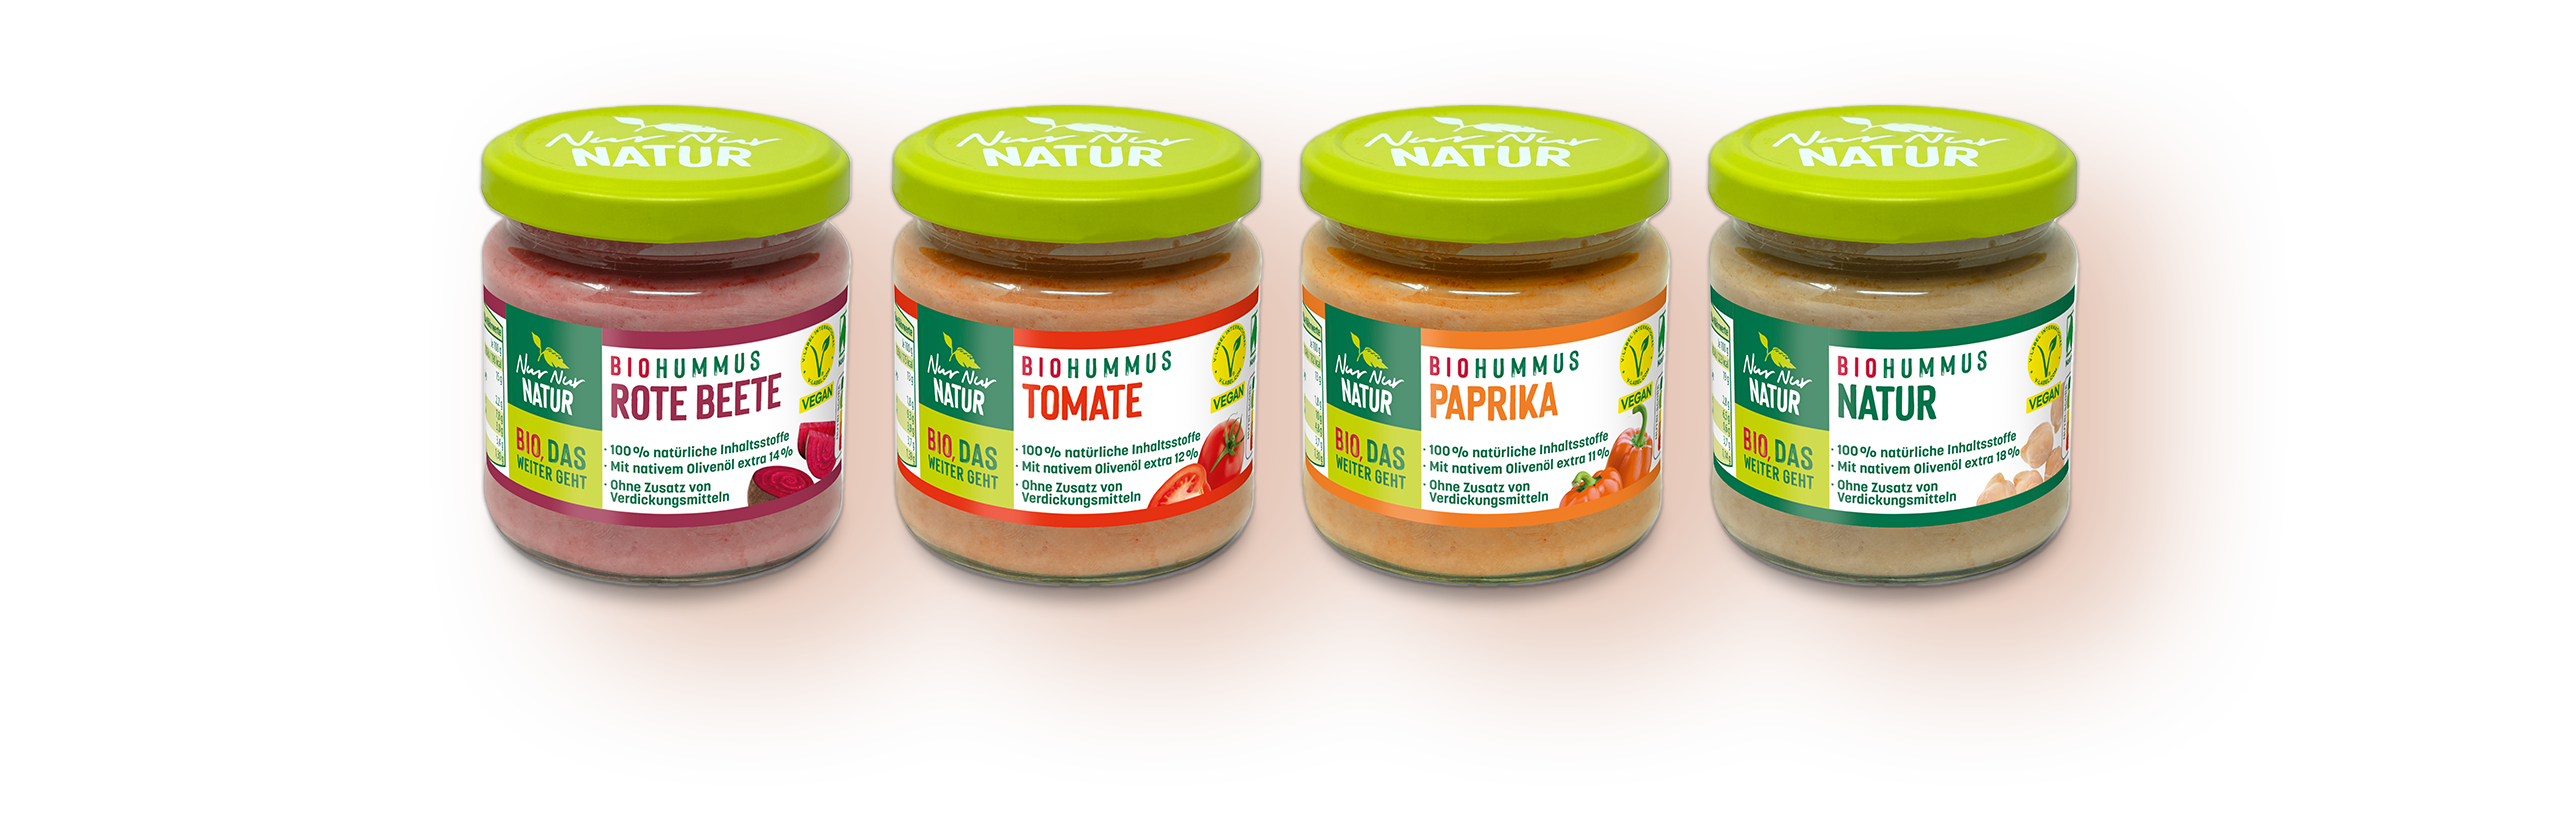 NurNurNatur MMUS Natur / Paprika / Rote Beete / Tomate - GRATIS TESTEN dank GELD-ZURÜCK-AKTION